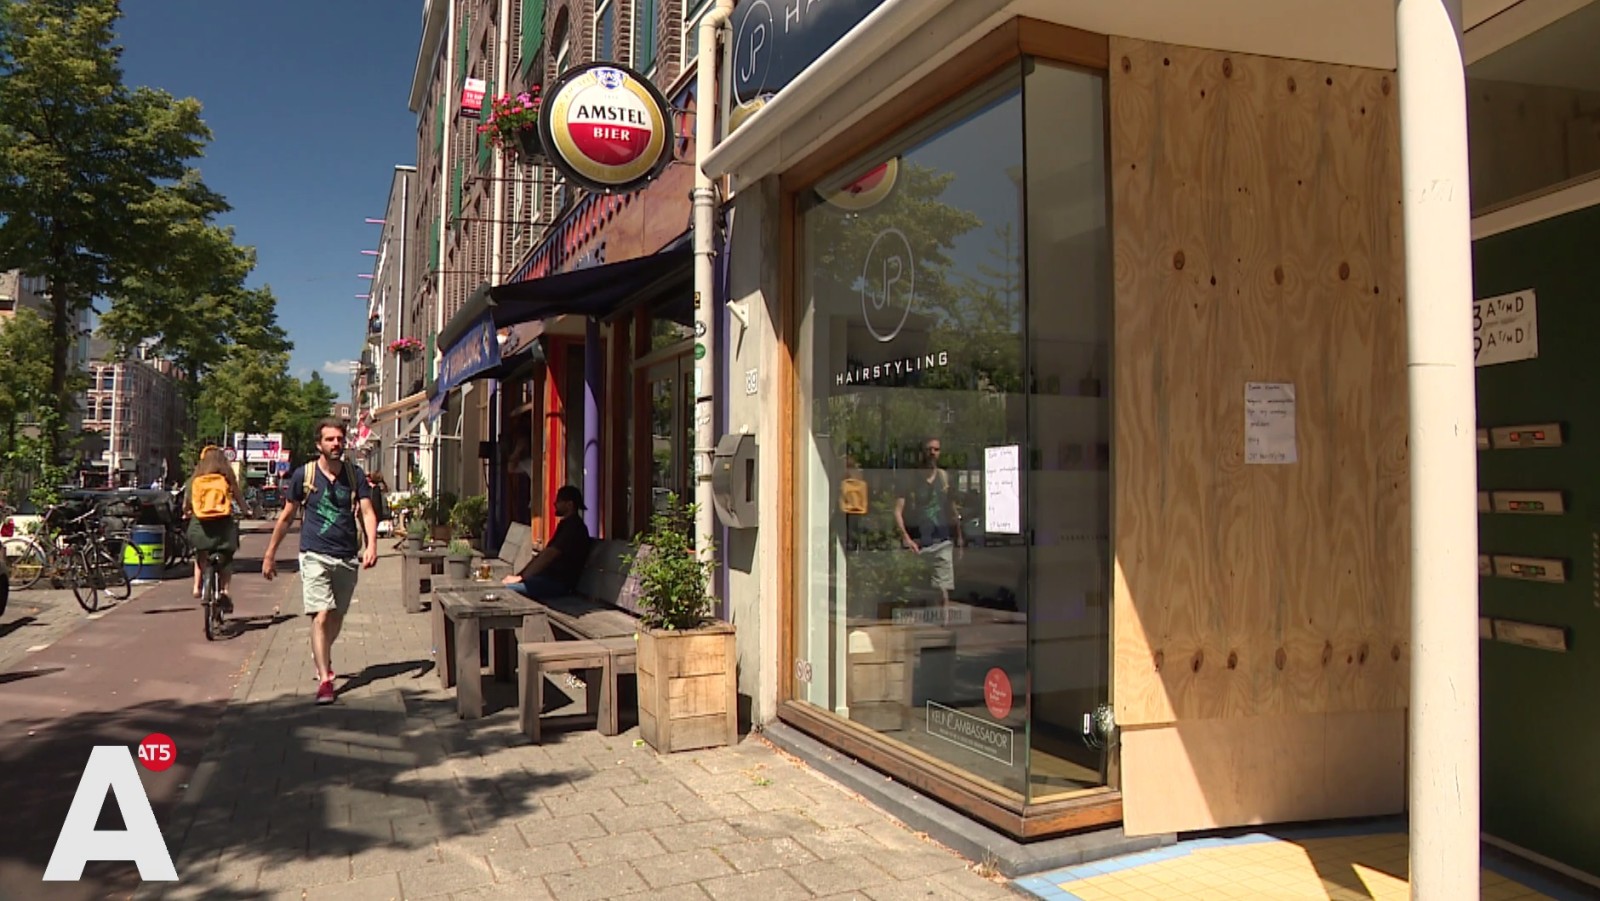 Kapperszaak aan Jan Pieter Heijestraat beschoten